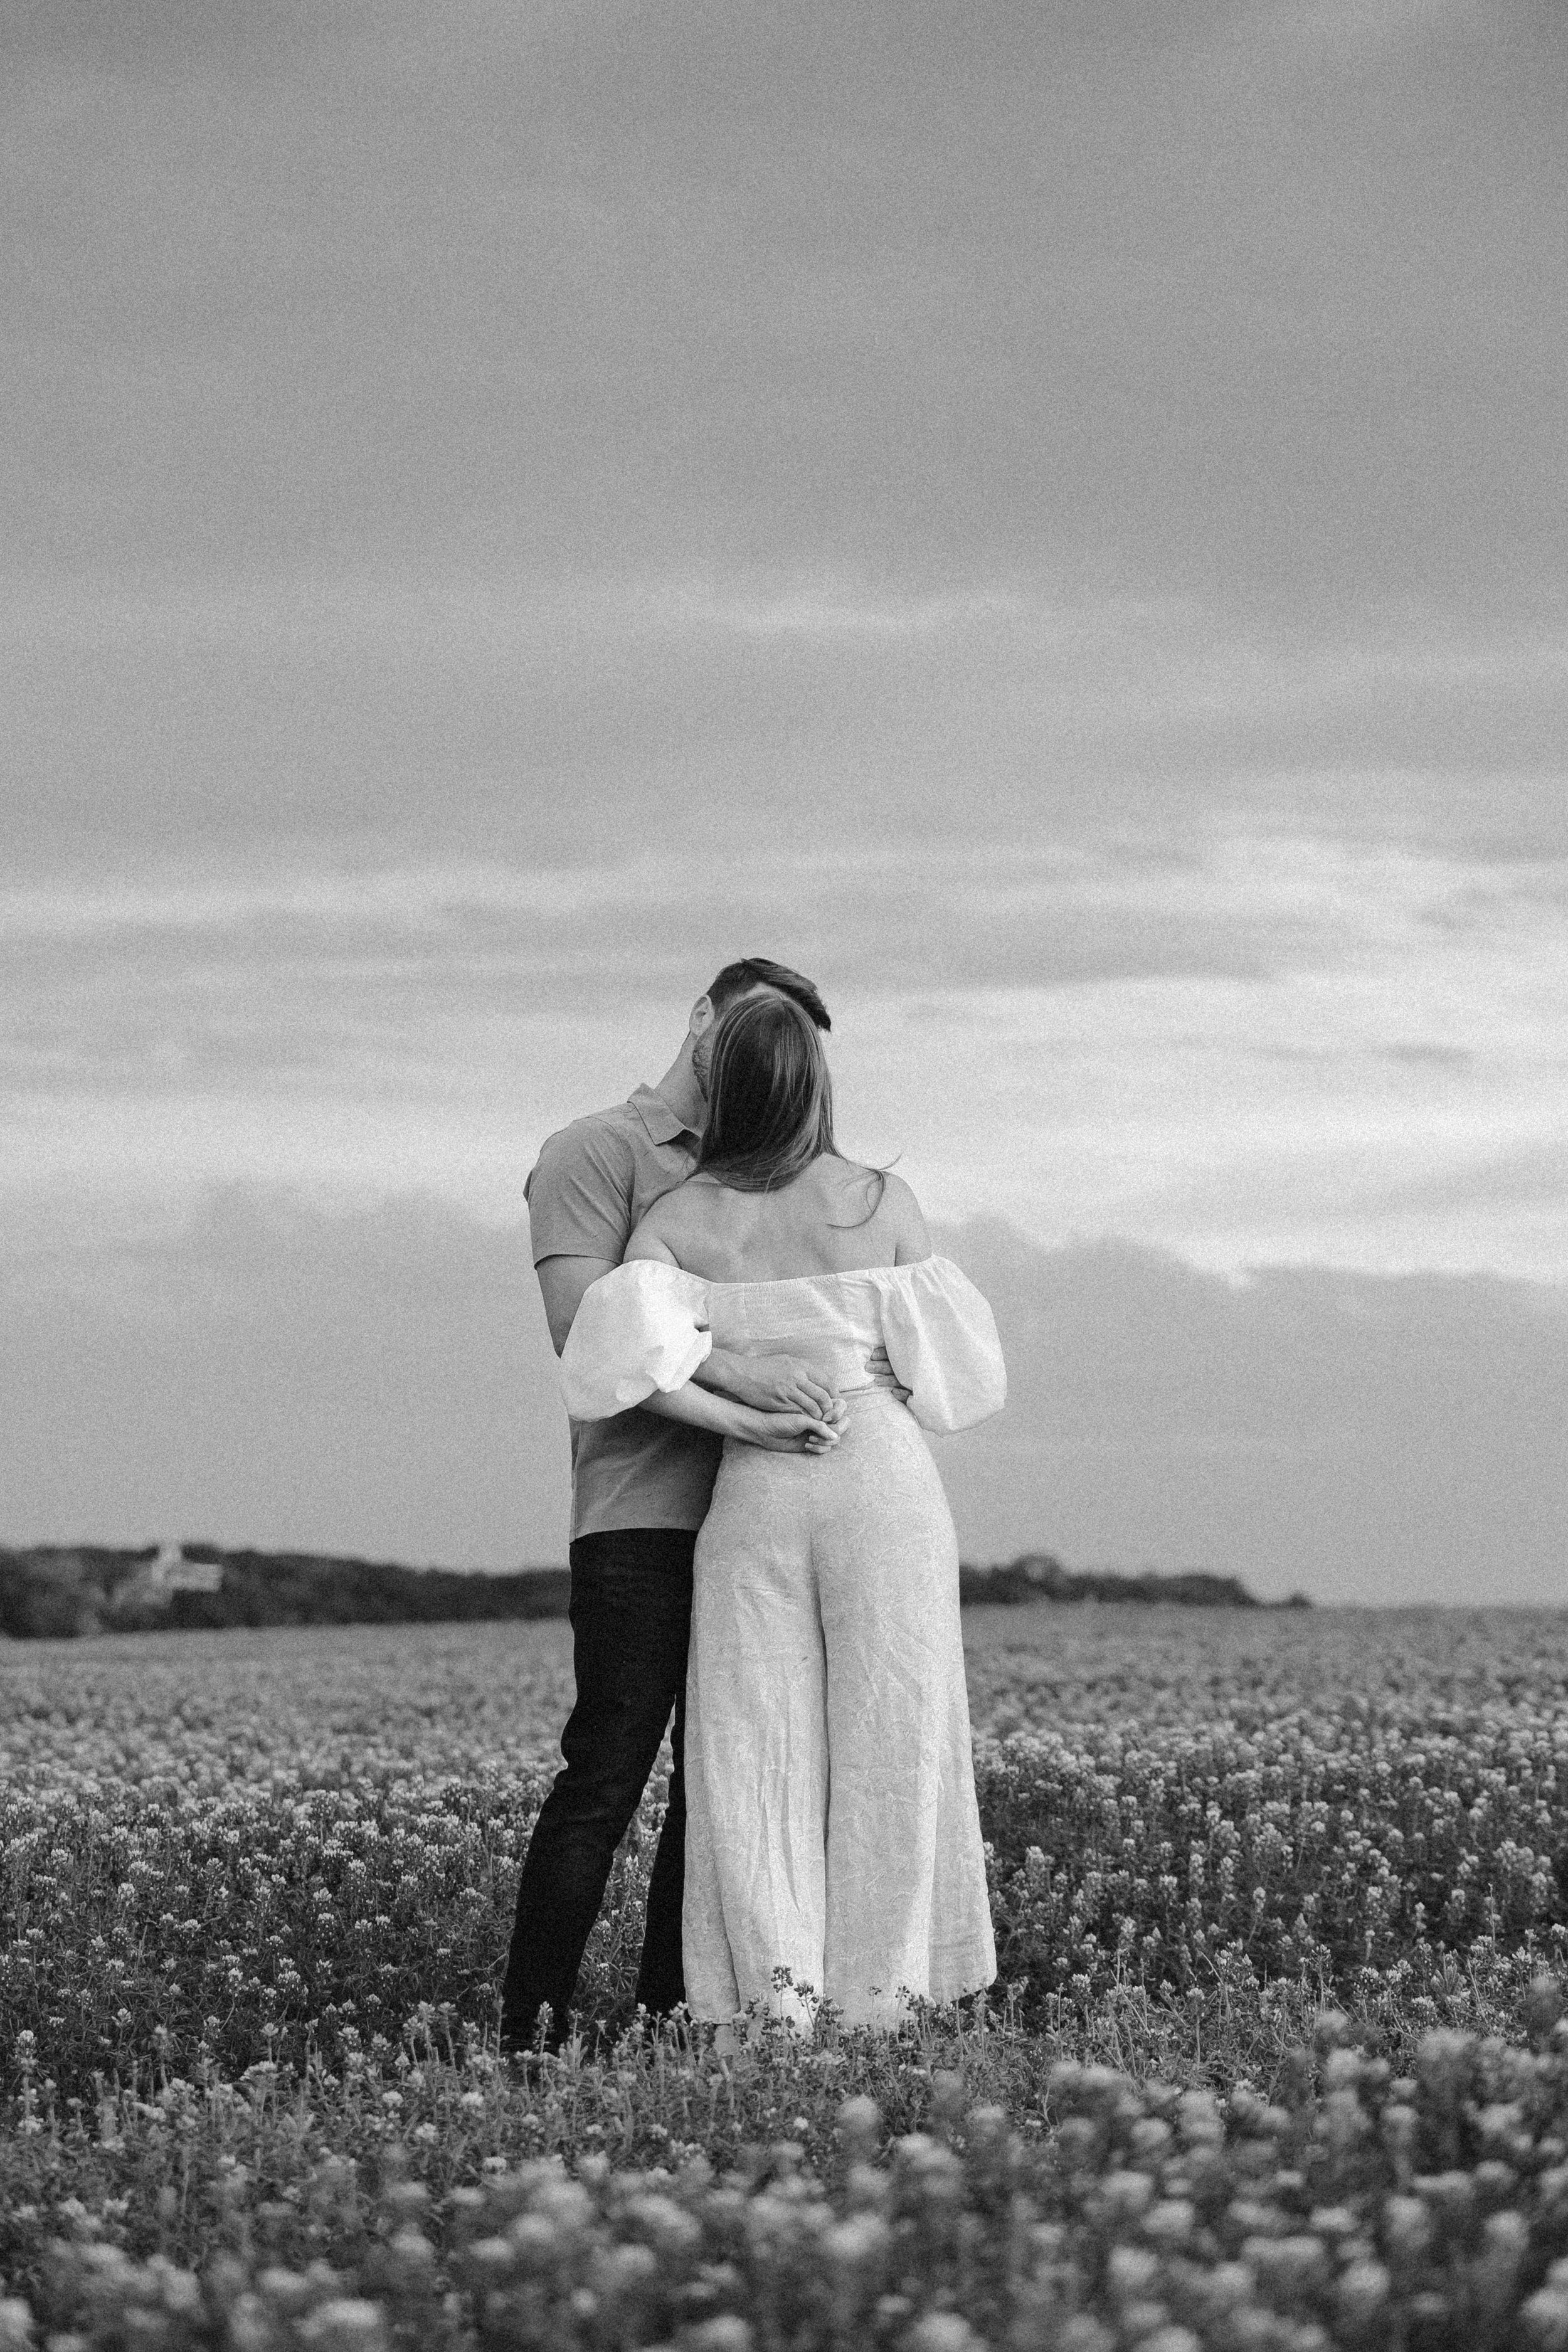 Man hugs woman in a field.